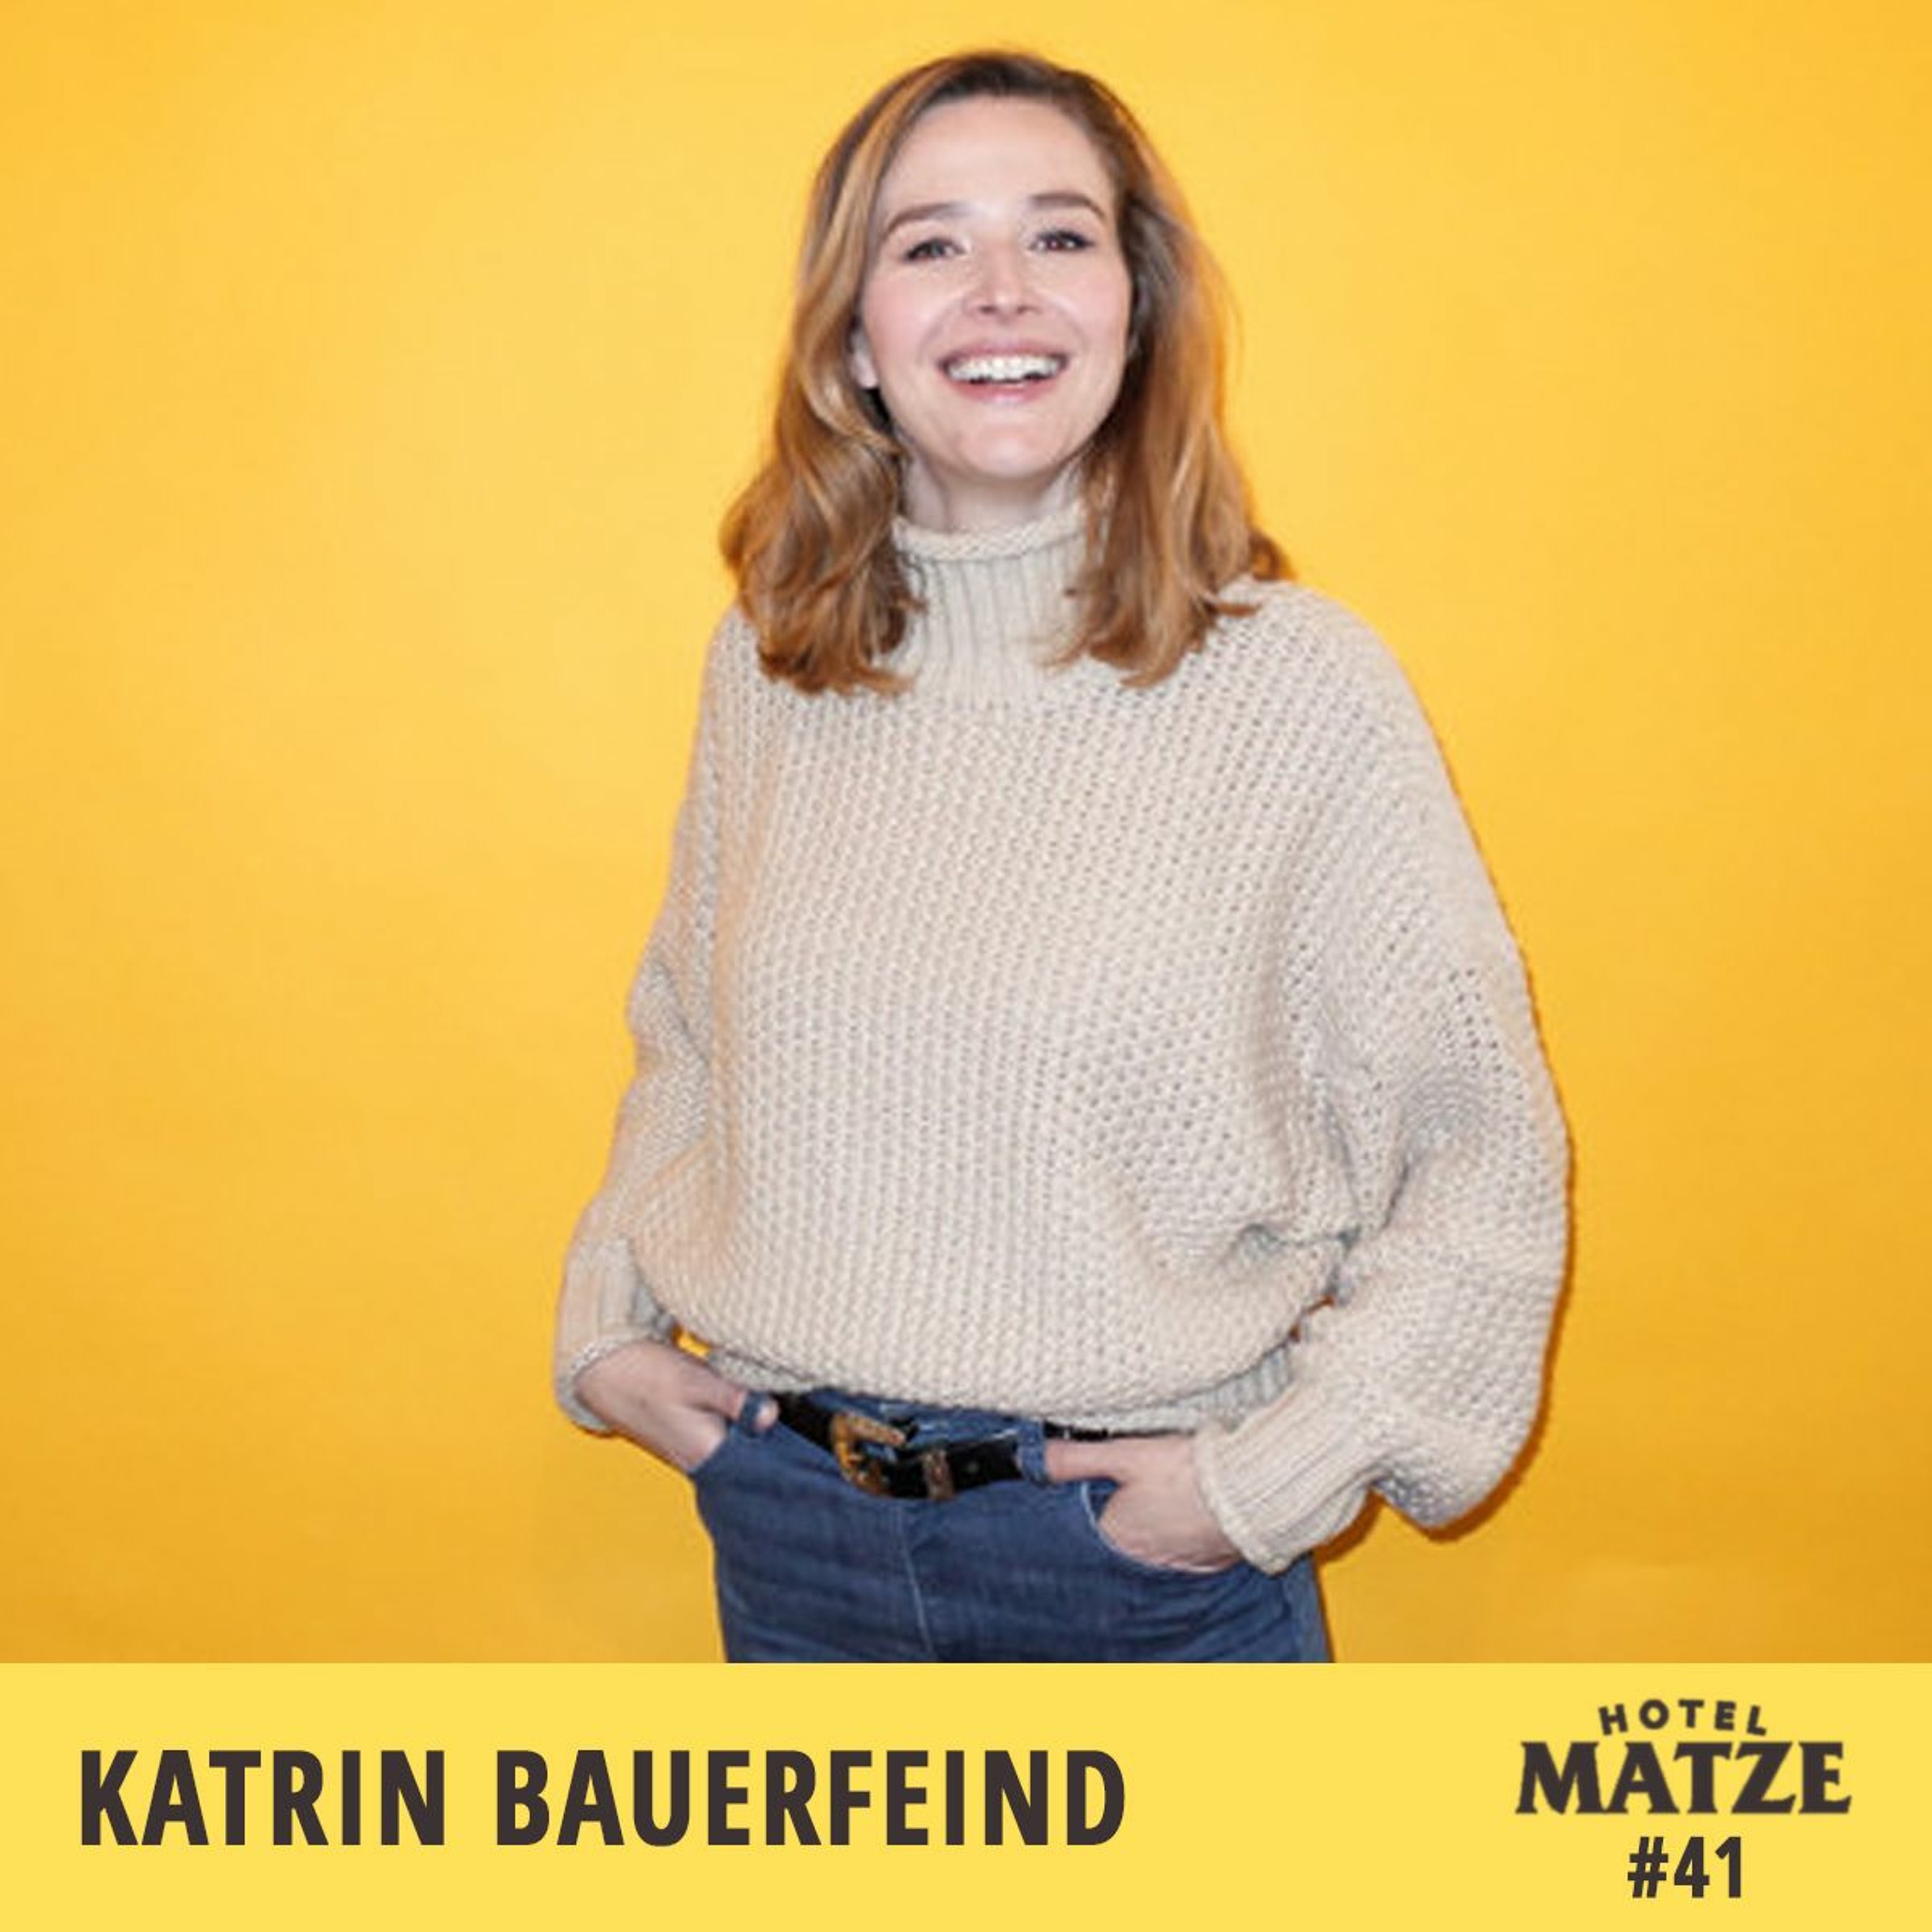 #41 Katrin Bauerfeind – Wie schaffst du es, so positiv zu bleiben?